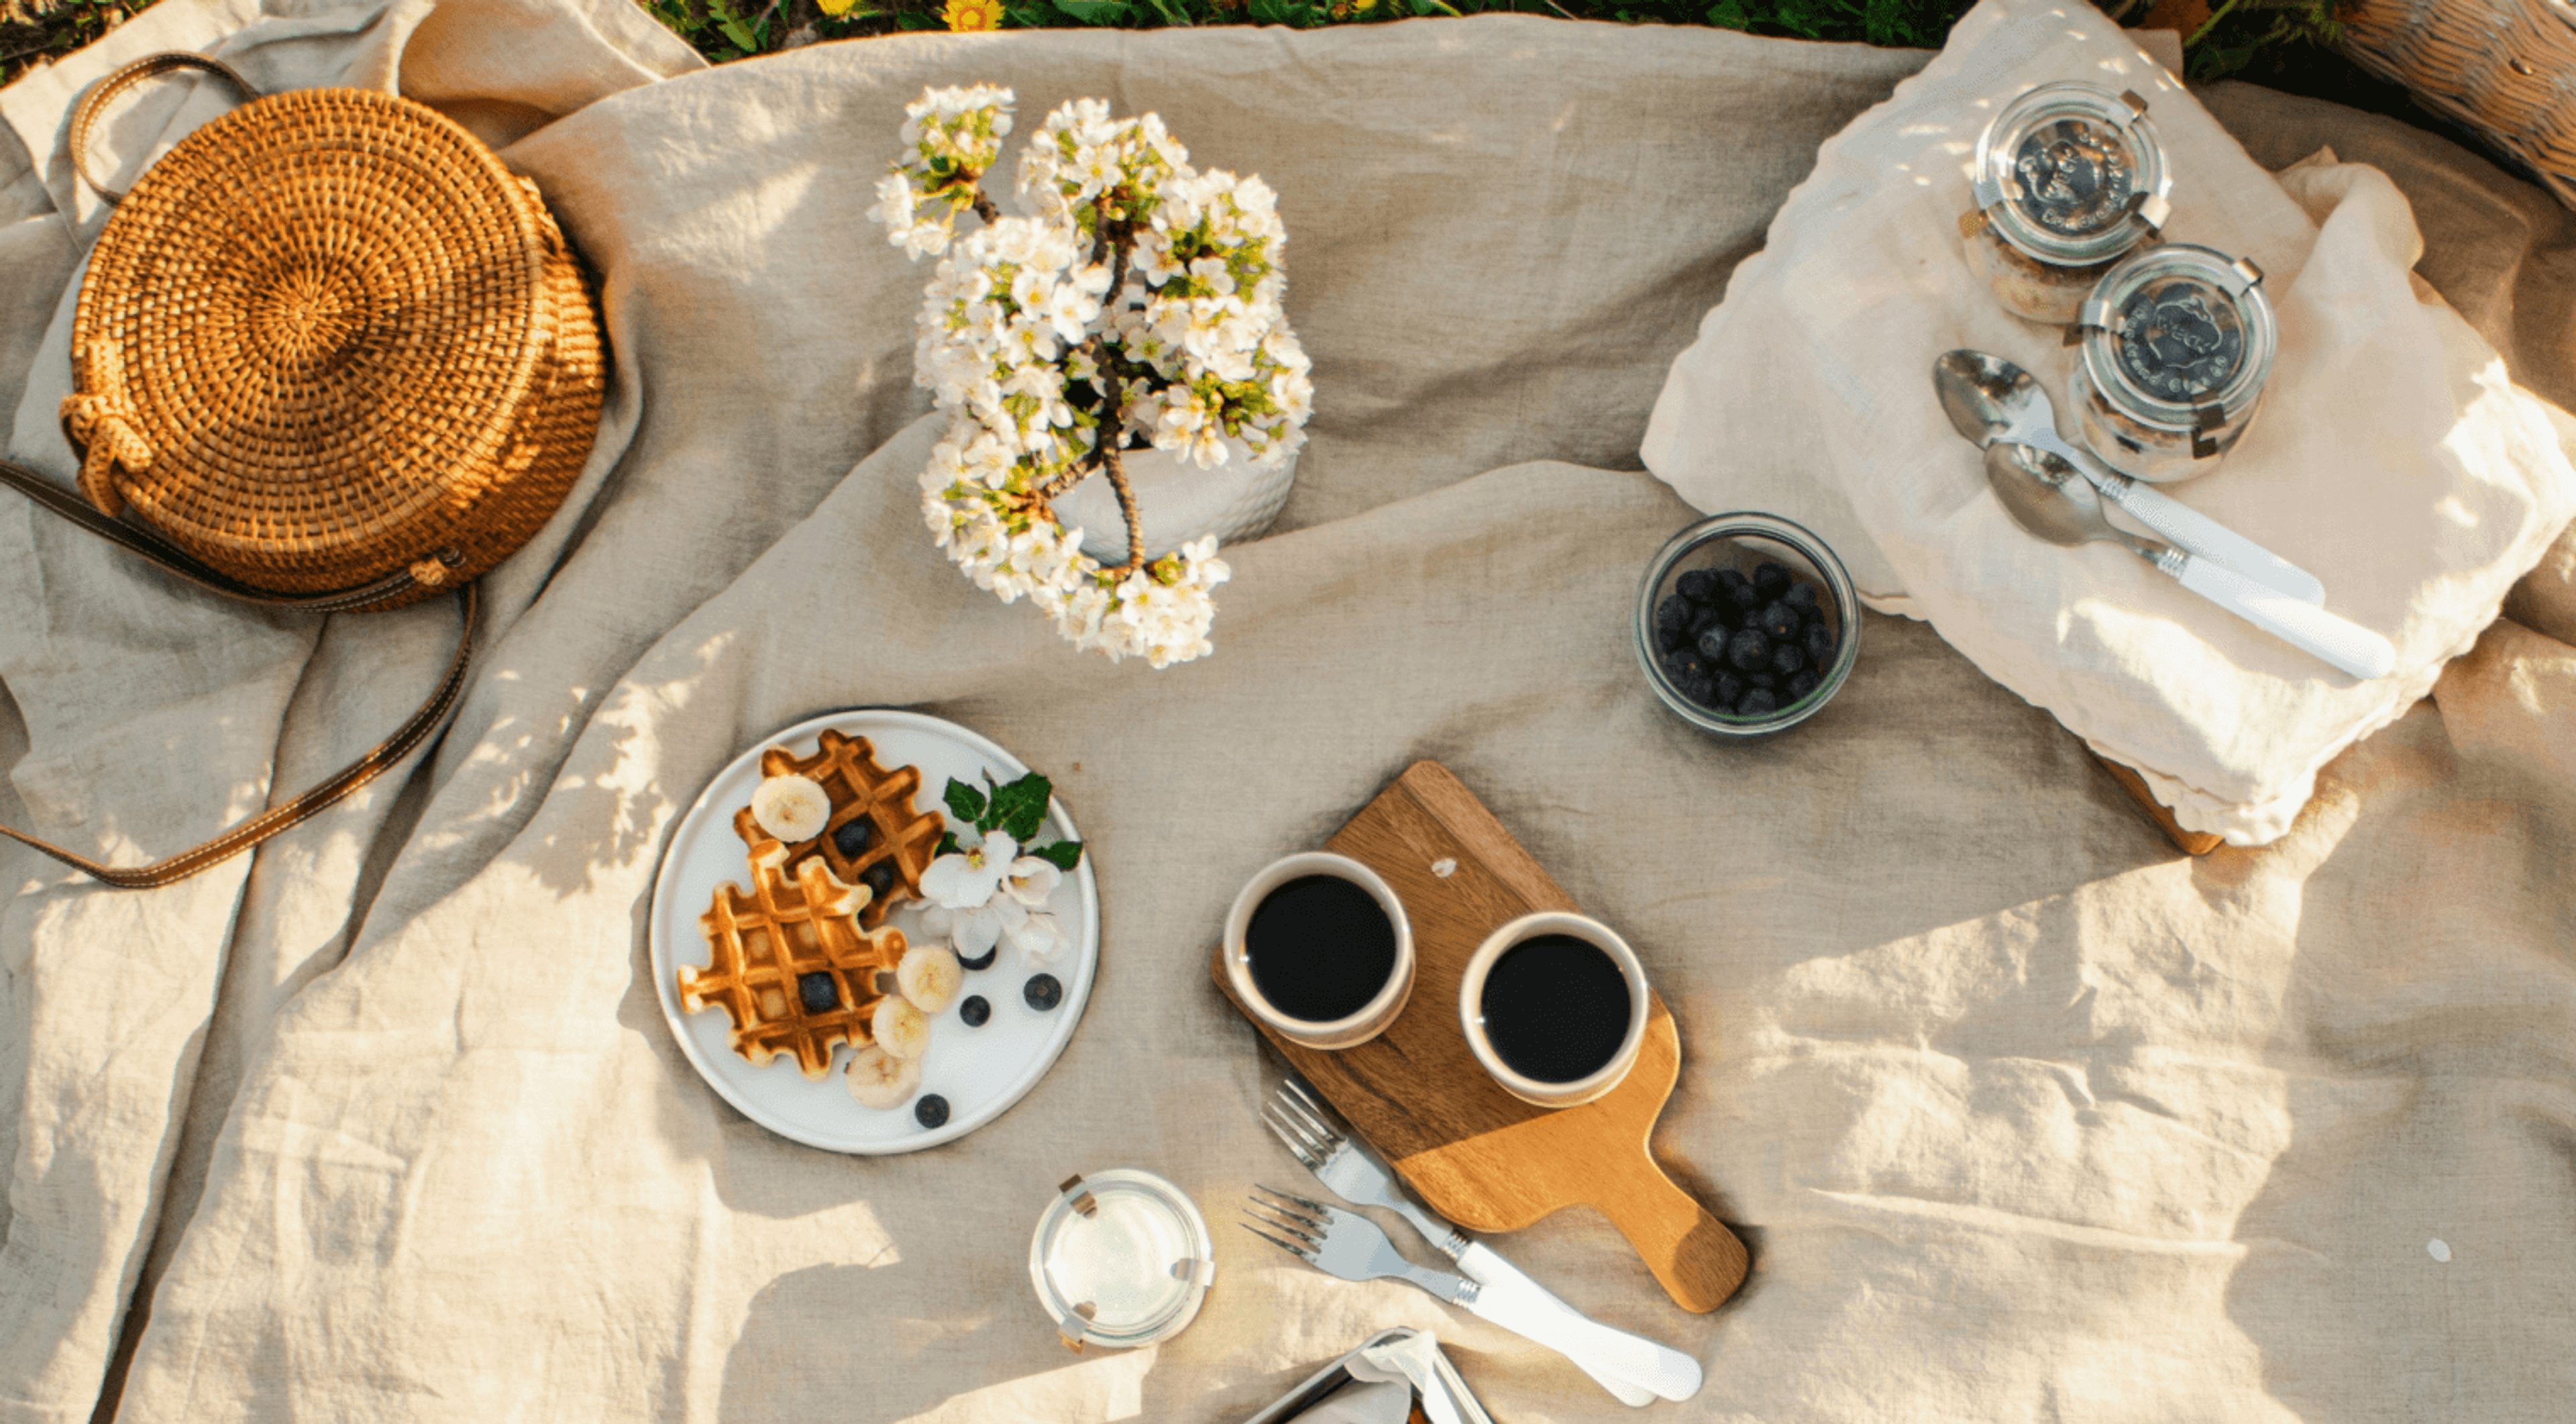 Как организовать пикник с друзьями в лучших традициях Pinterest